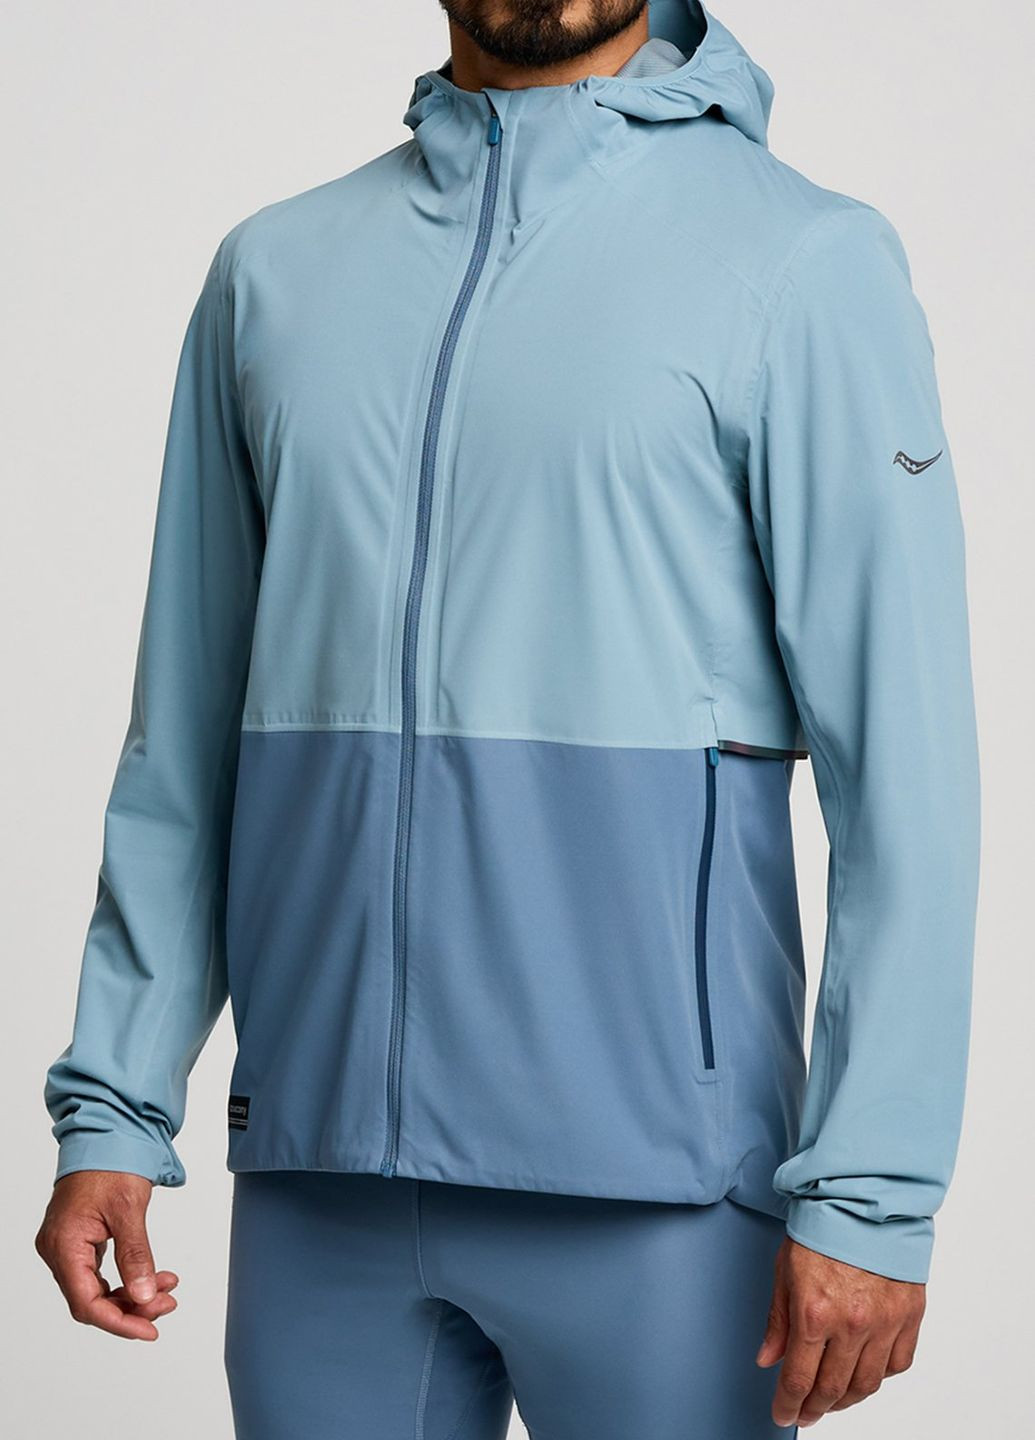 Голубая демисезонная голубая спортивная куртка runshield jacket Saucony